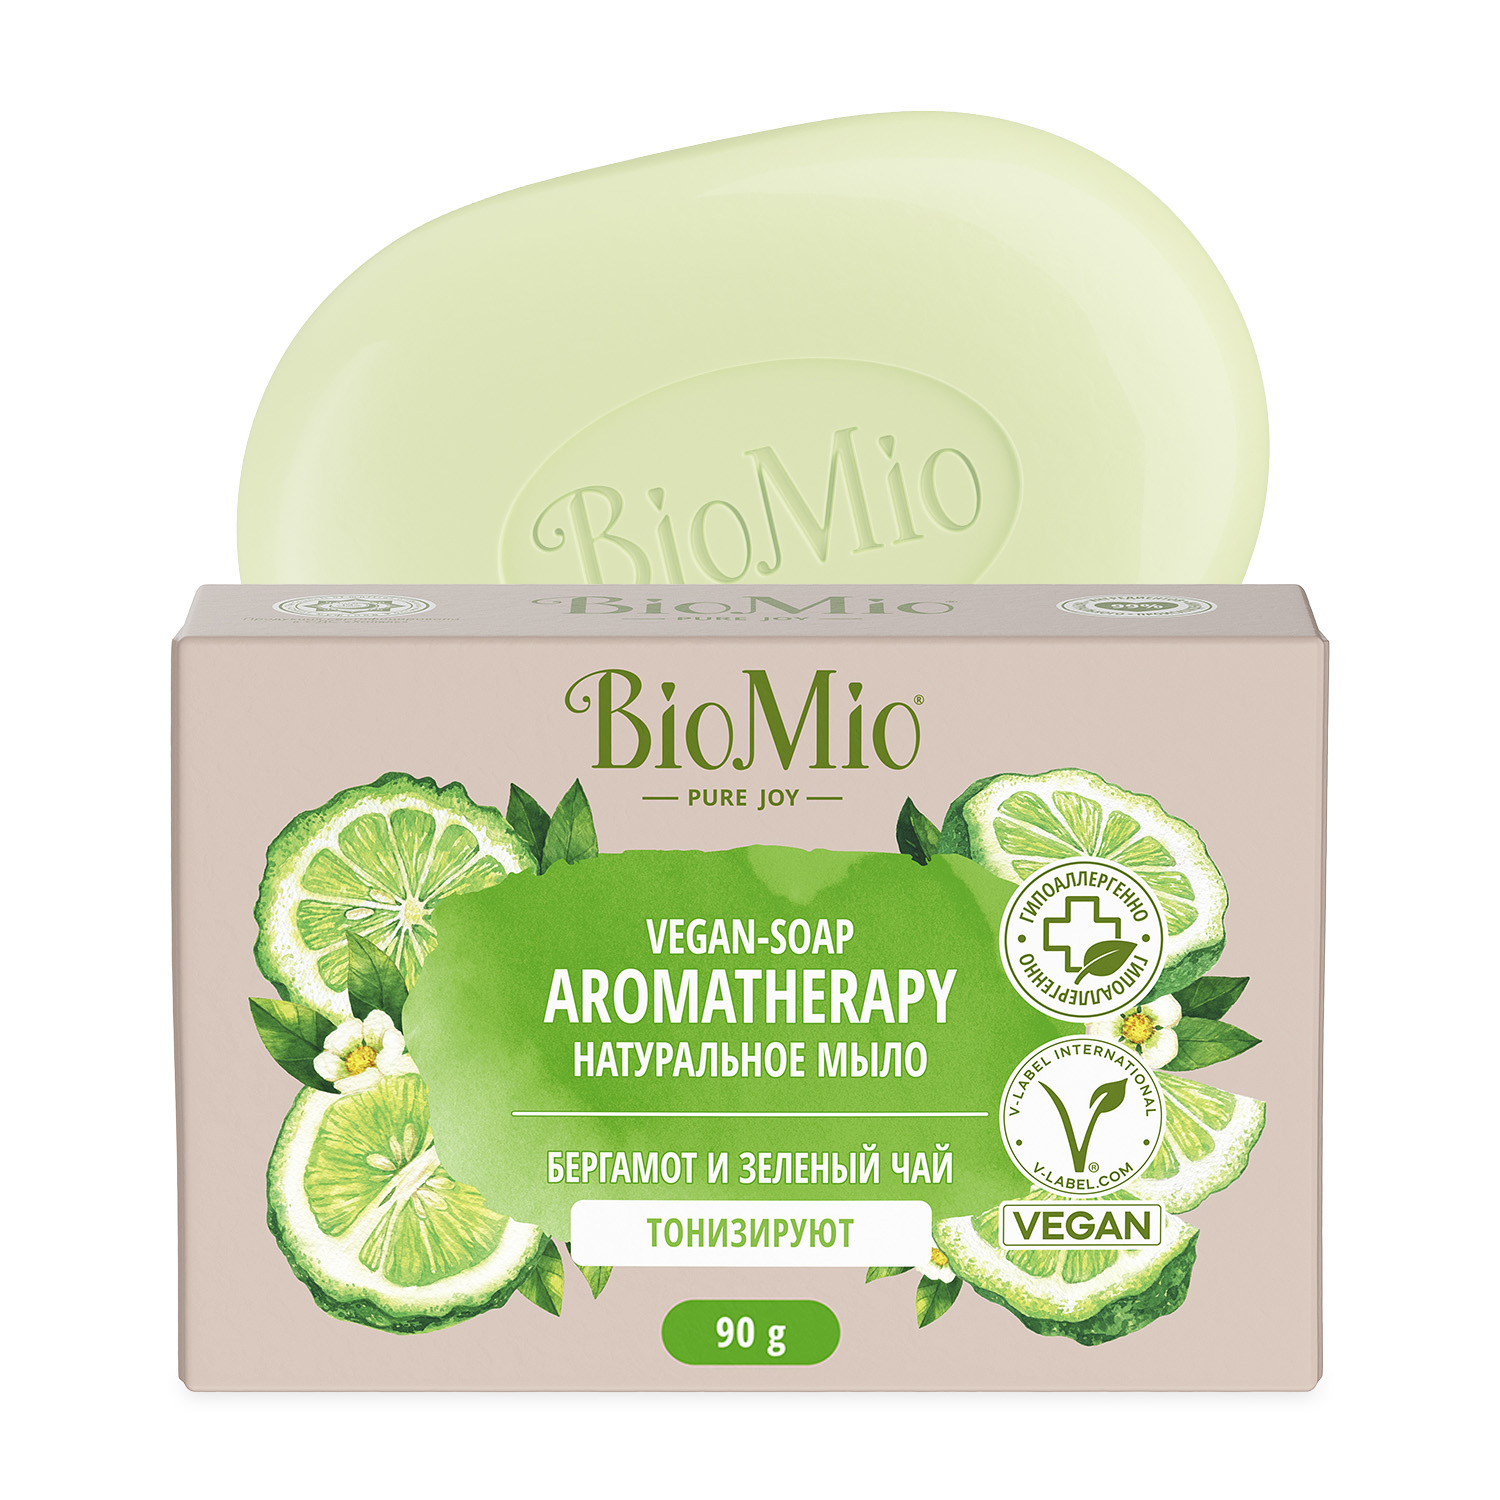 BioMio Натуральное мыло Бергамот и зеленый чай Vegan Soap Aromatherapy, 90 г (BioMio, Мыло)